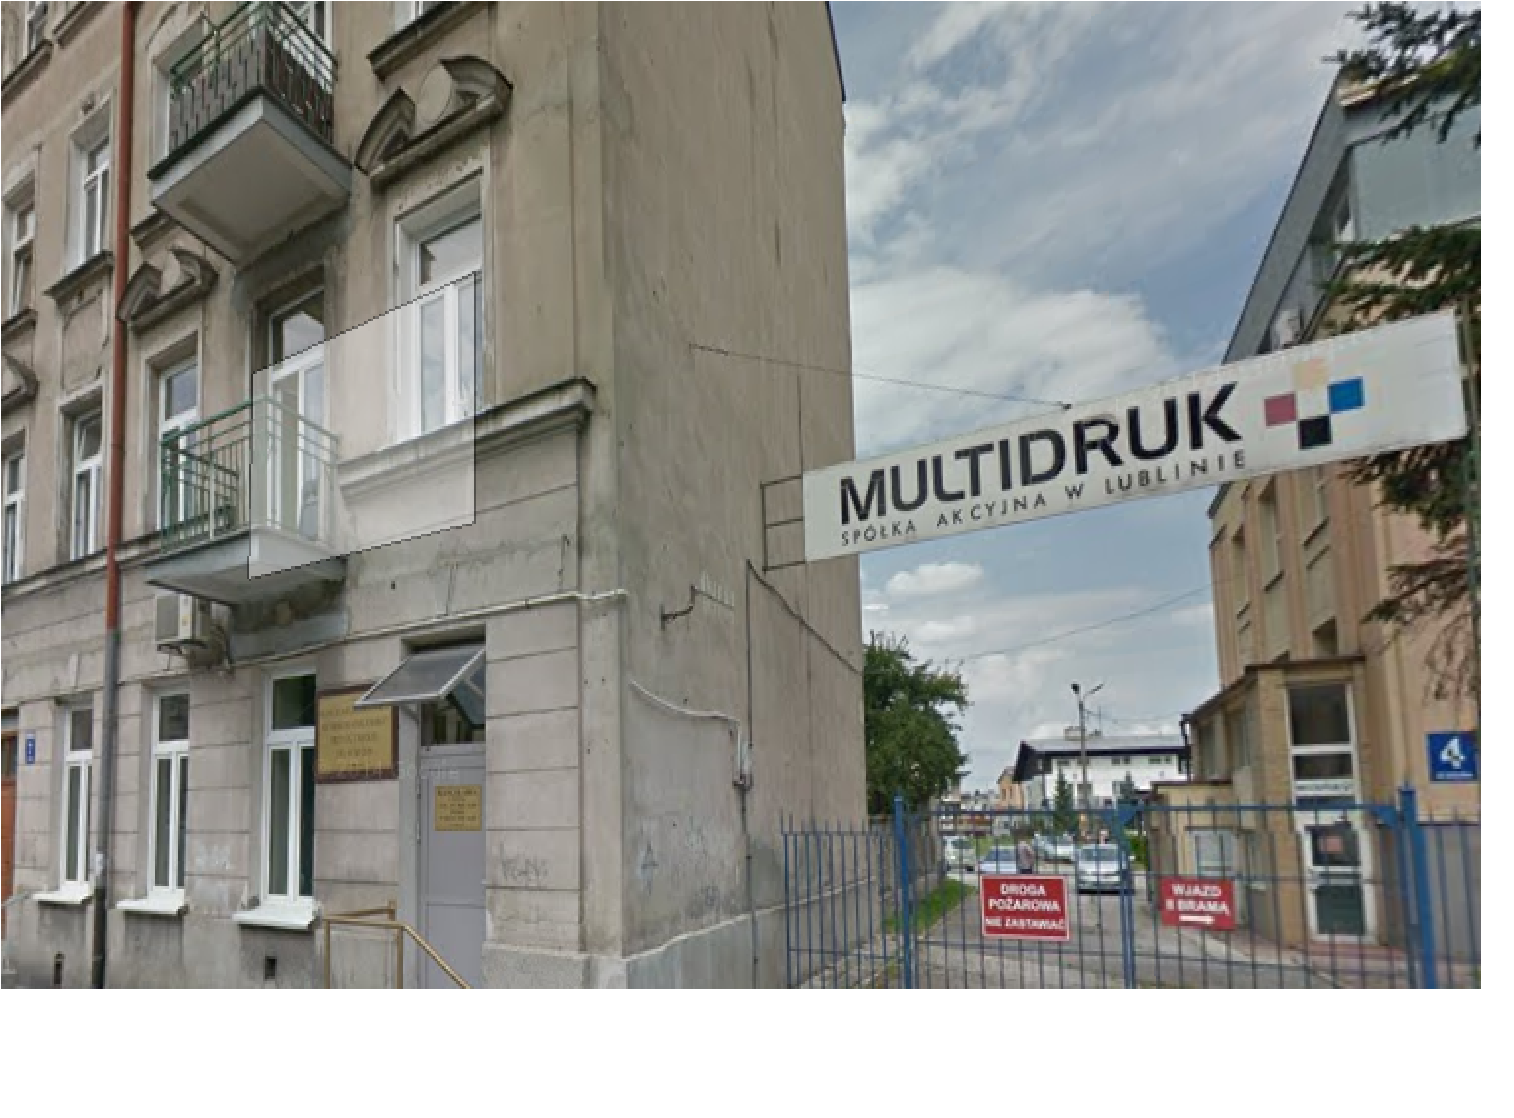 Multidruk S.A. w Lublinie